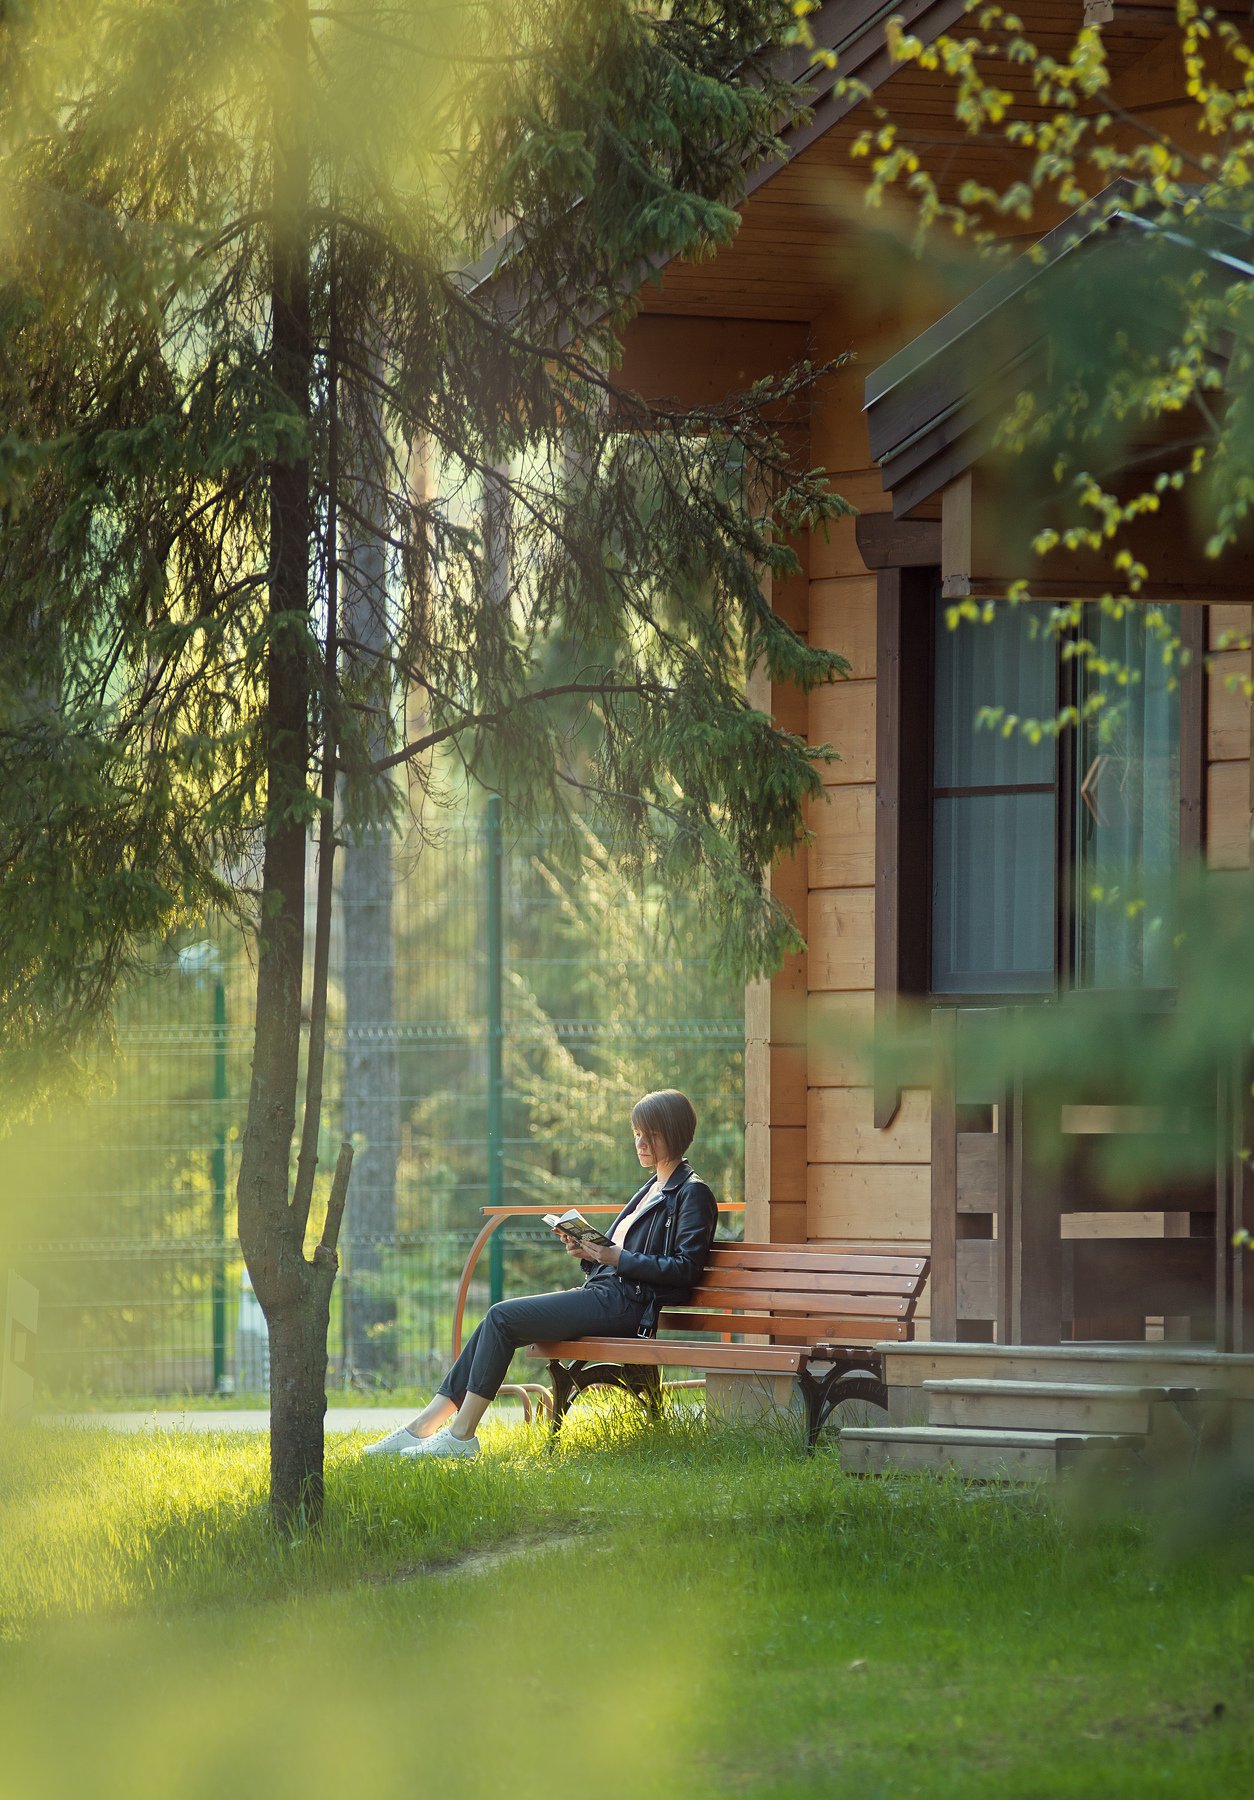 лето, чтение,лес,парк, солнце,скамейка,книга, Фёдорова Дарья